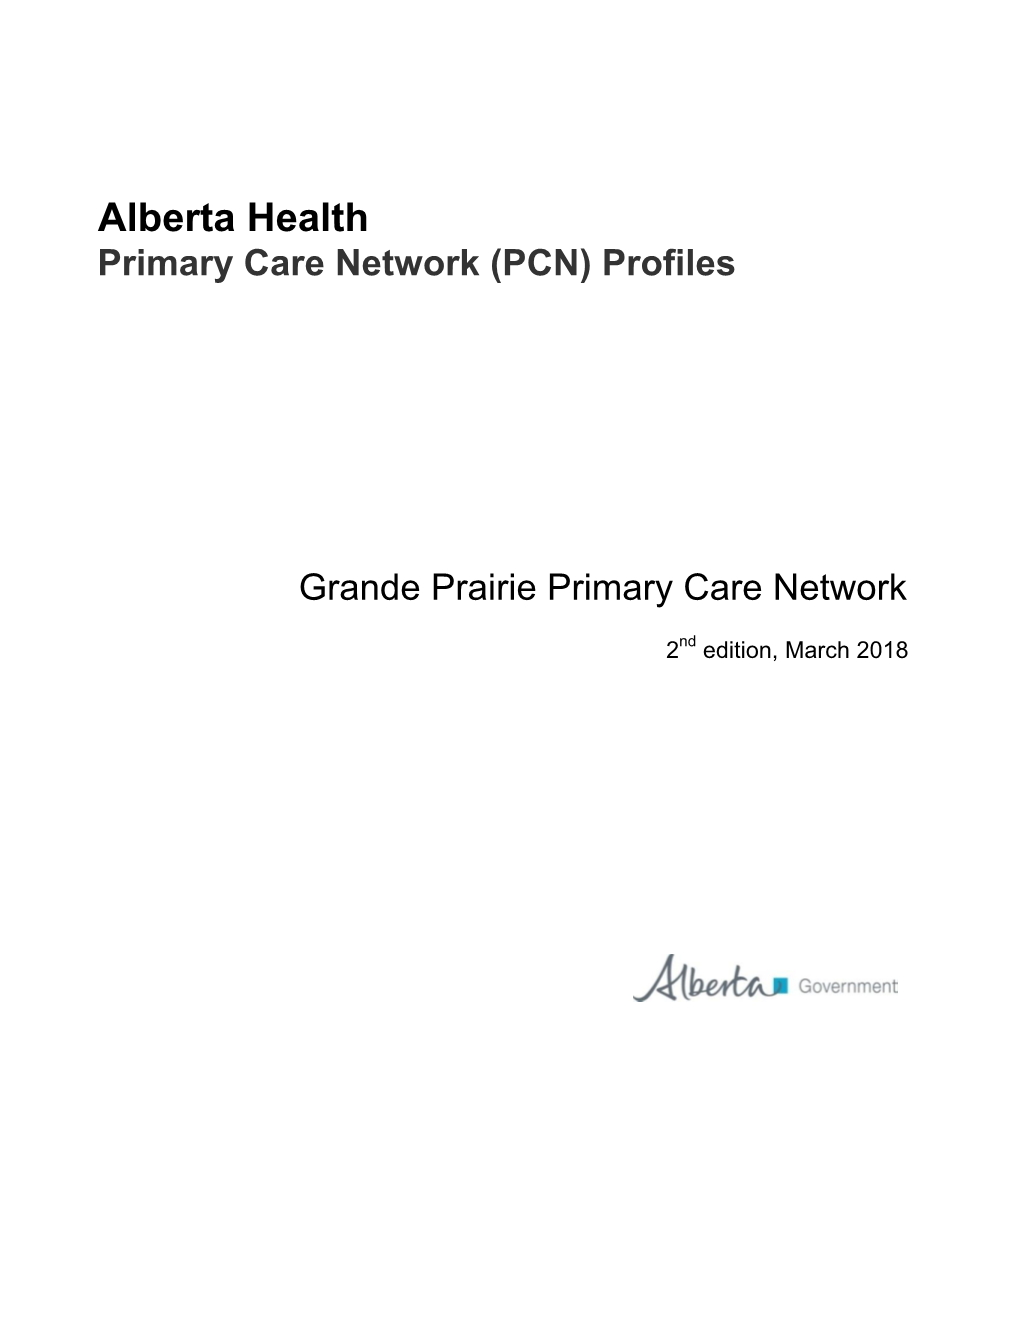 Alberta Health Primary Care Network (PCN) Profiles